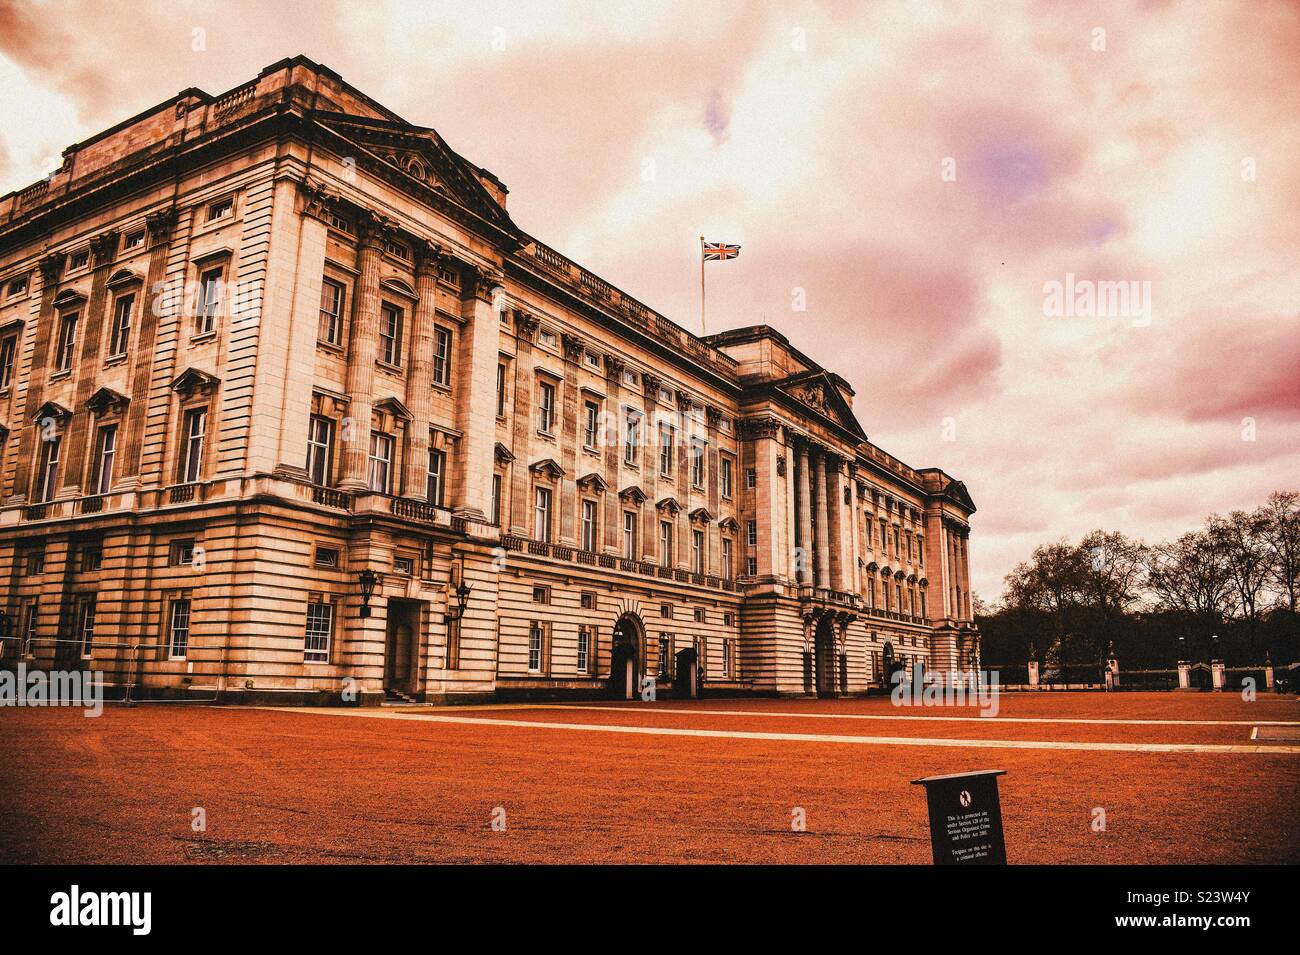 El Palacio de Buckingham, Londres #reina #HRM #royals #Londres Foto de stock